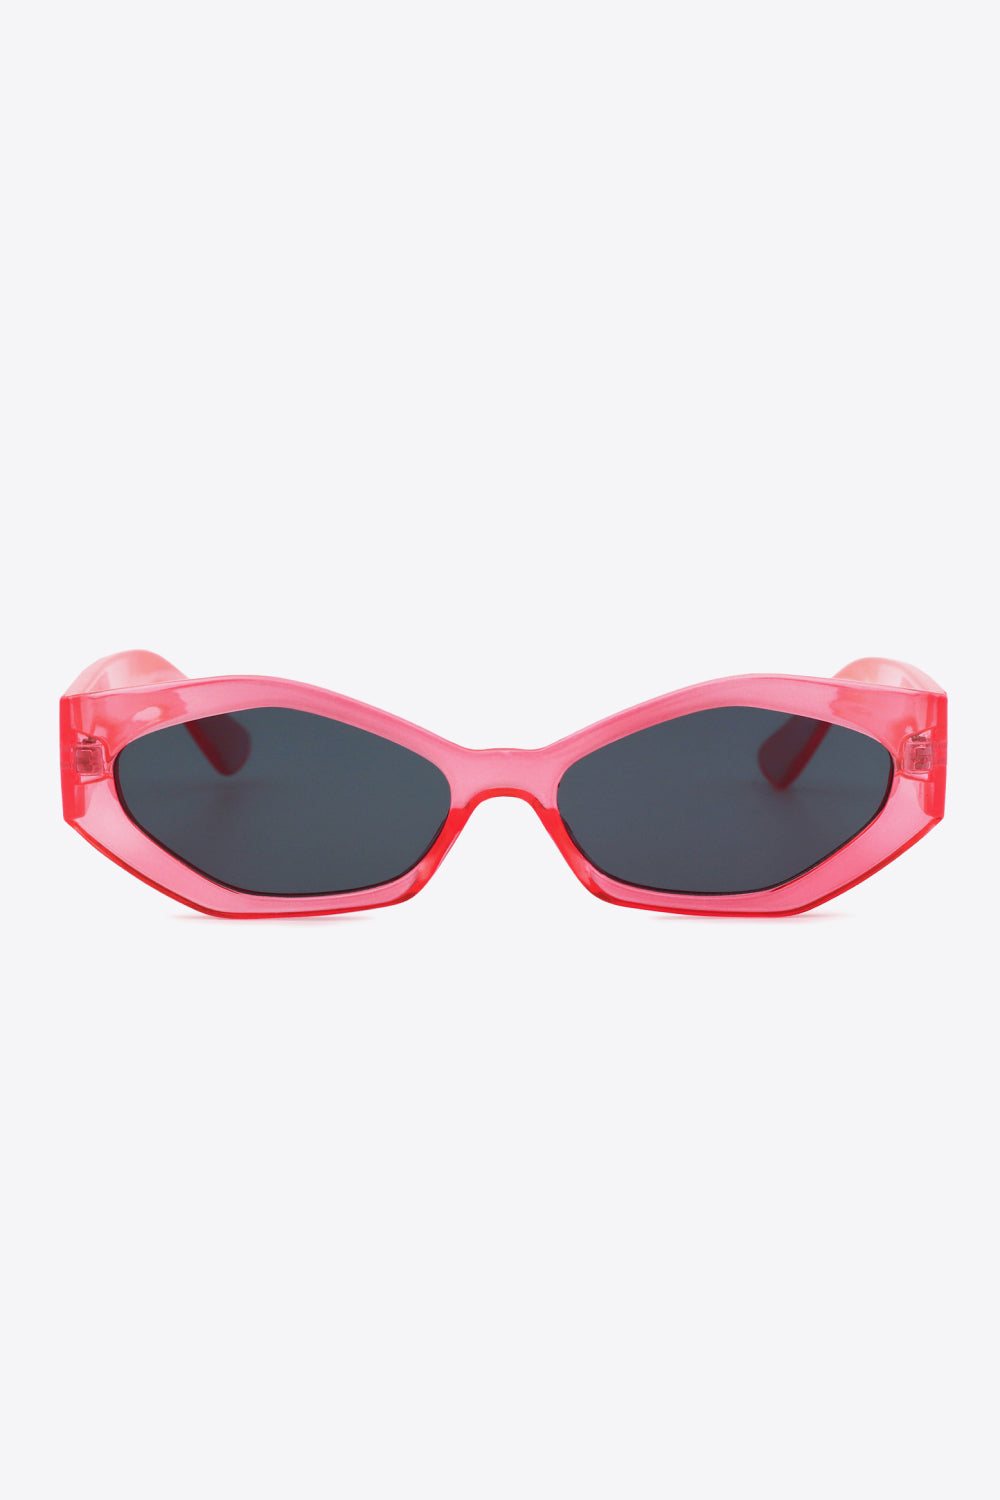 Polycarbonate Frame Wayfarer Sunglasses One Size Sunglasses by Vim&Vigor | Vim&Vigor Boutique